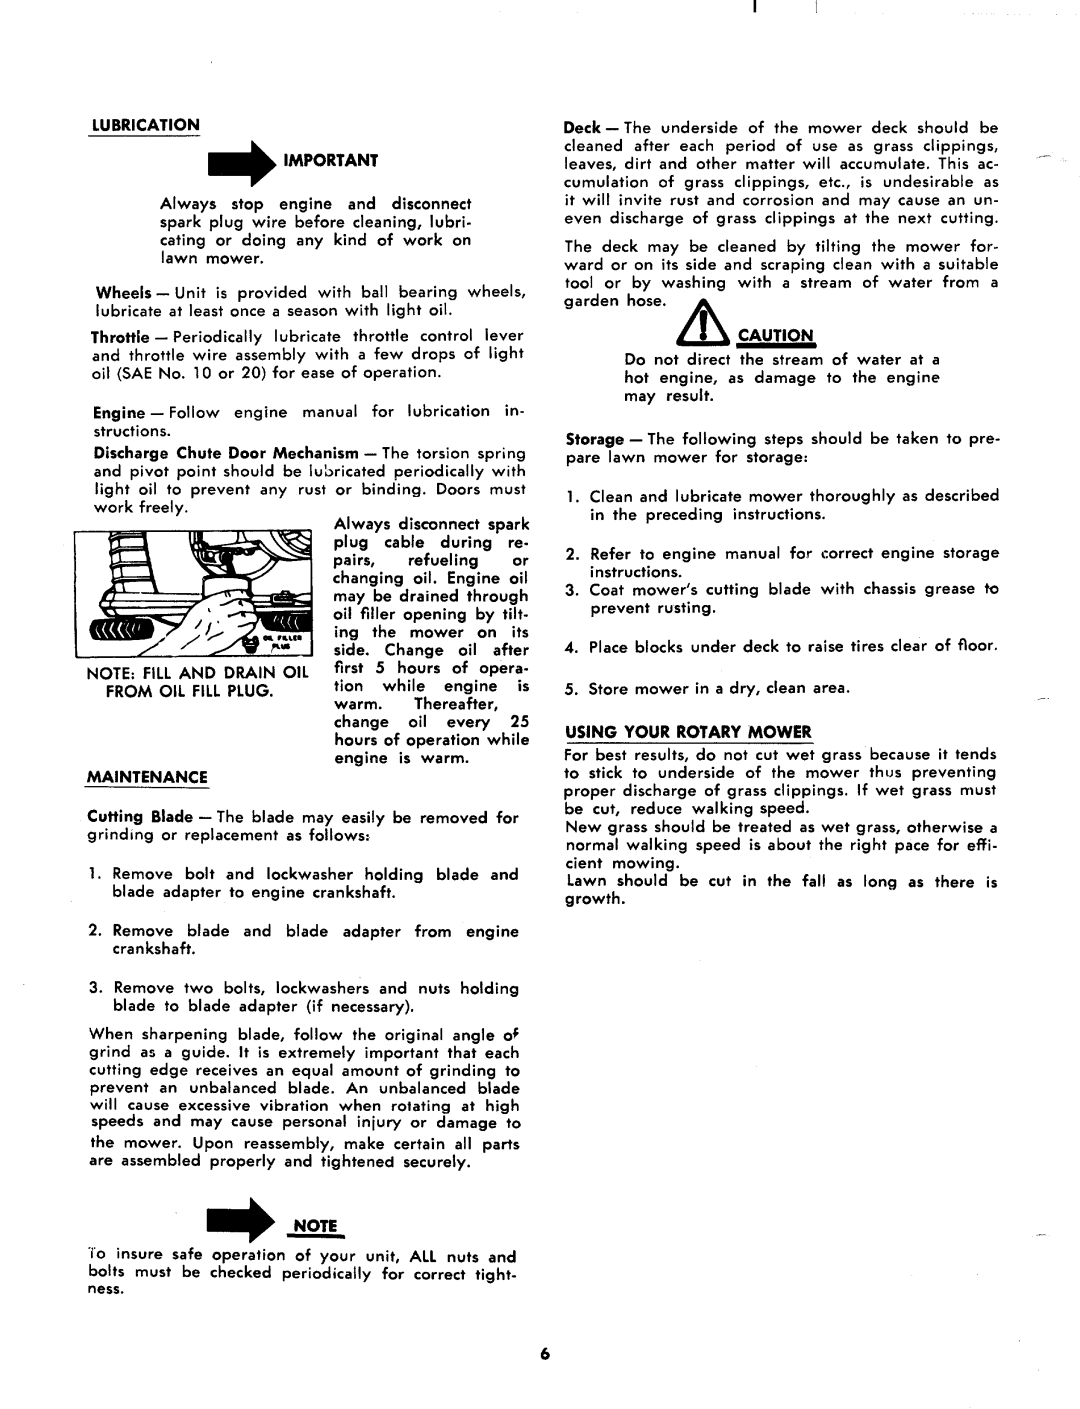 MTD 116-330A manual 